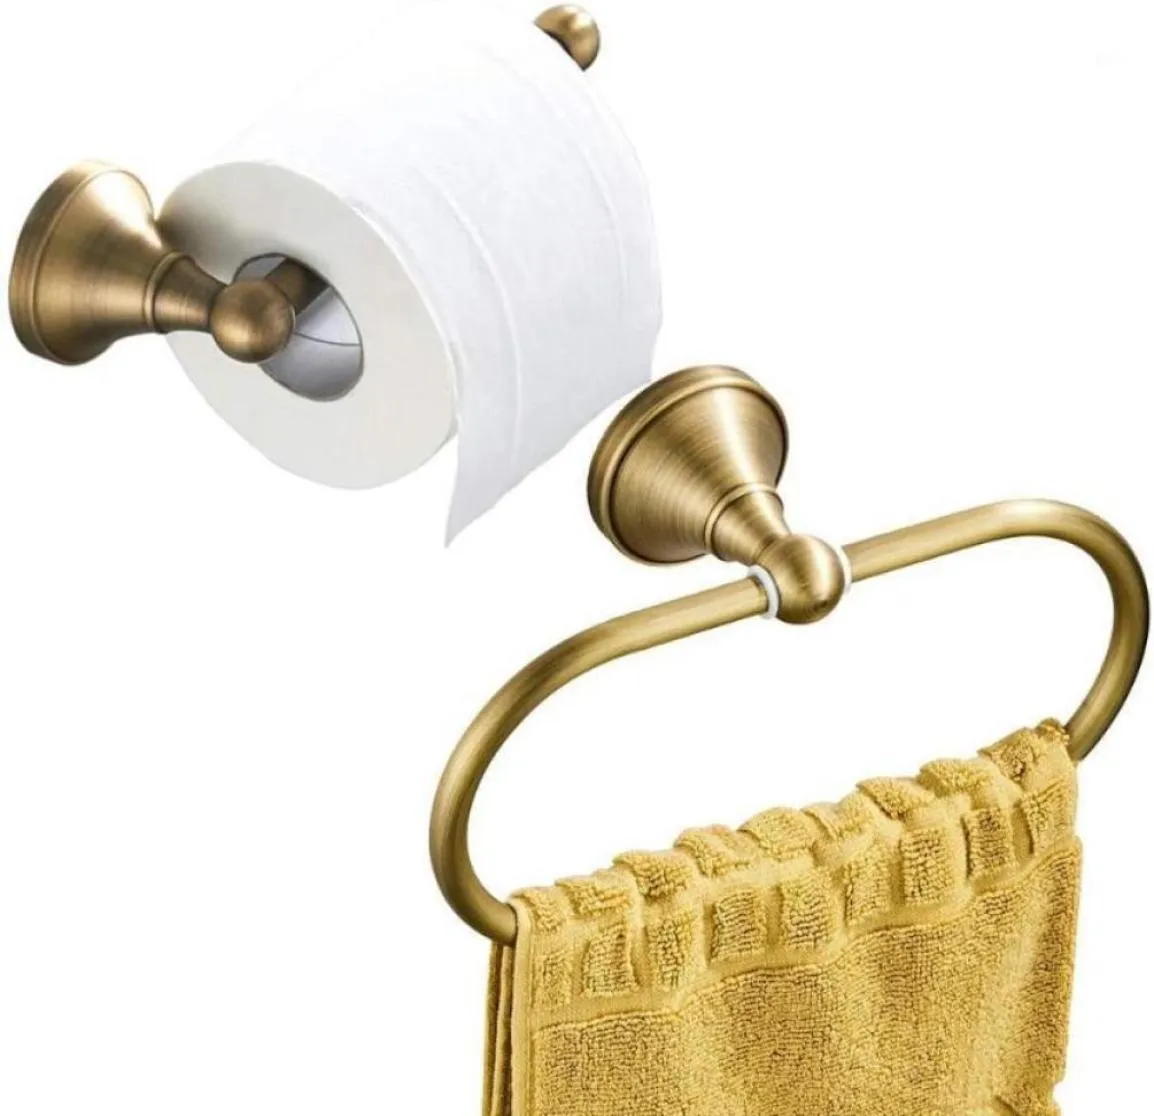 Acessório de banho Conjunto de papel higiênico Impu e toalha de toalha Montada com a parede de parede de bronze antigo escovado Bronze4524942